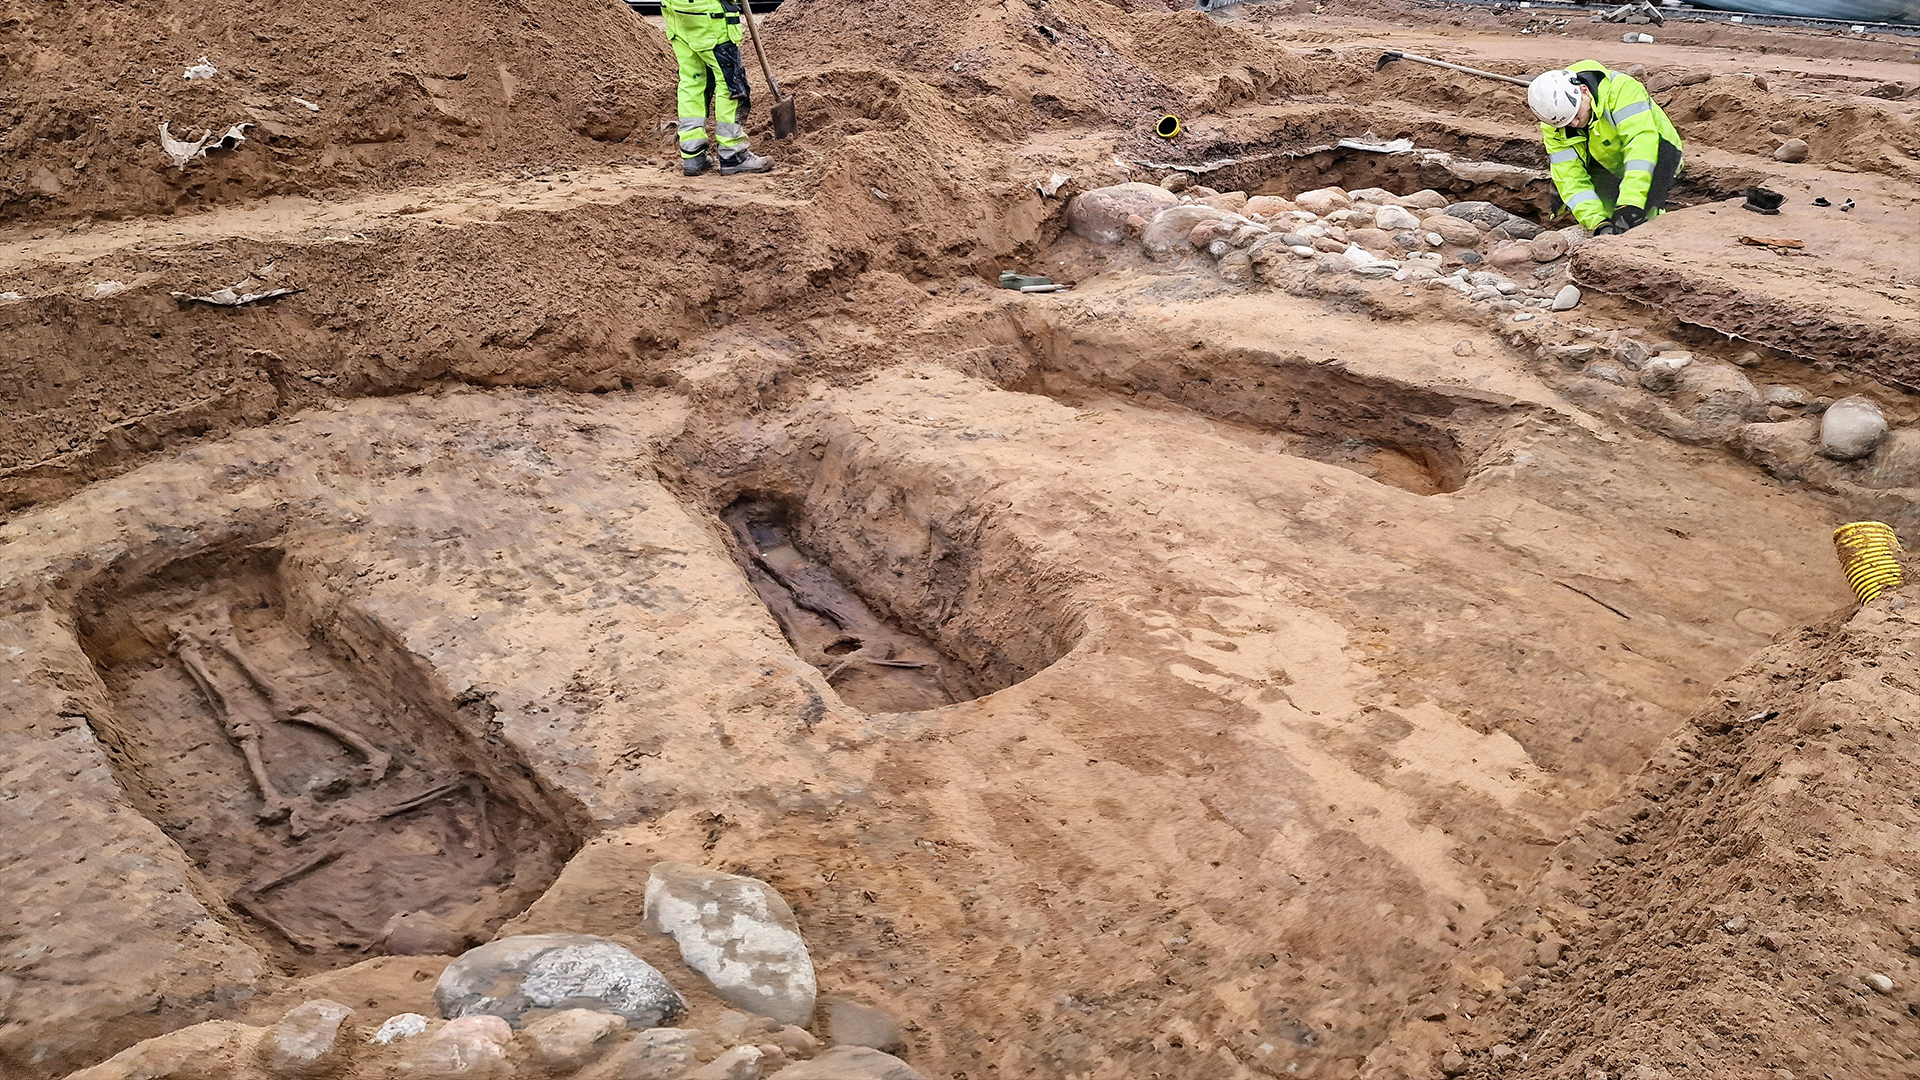 Le chantier de fouilles d'Halmstad en Suède a mobilisé des dizaines d'archéologues qui ont fouillé 49 tombes. Avec des découvertes surprenantes... © Kulturmiljö Halland, Stiftelsen Hallands länsmuseer